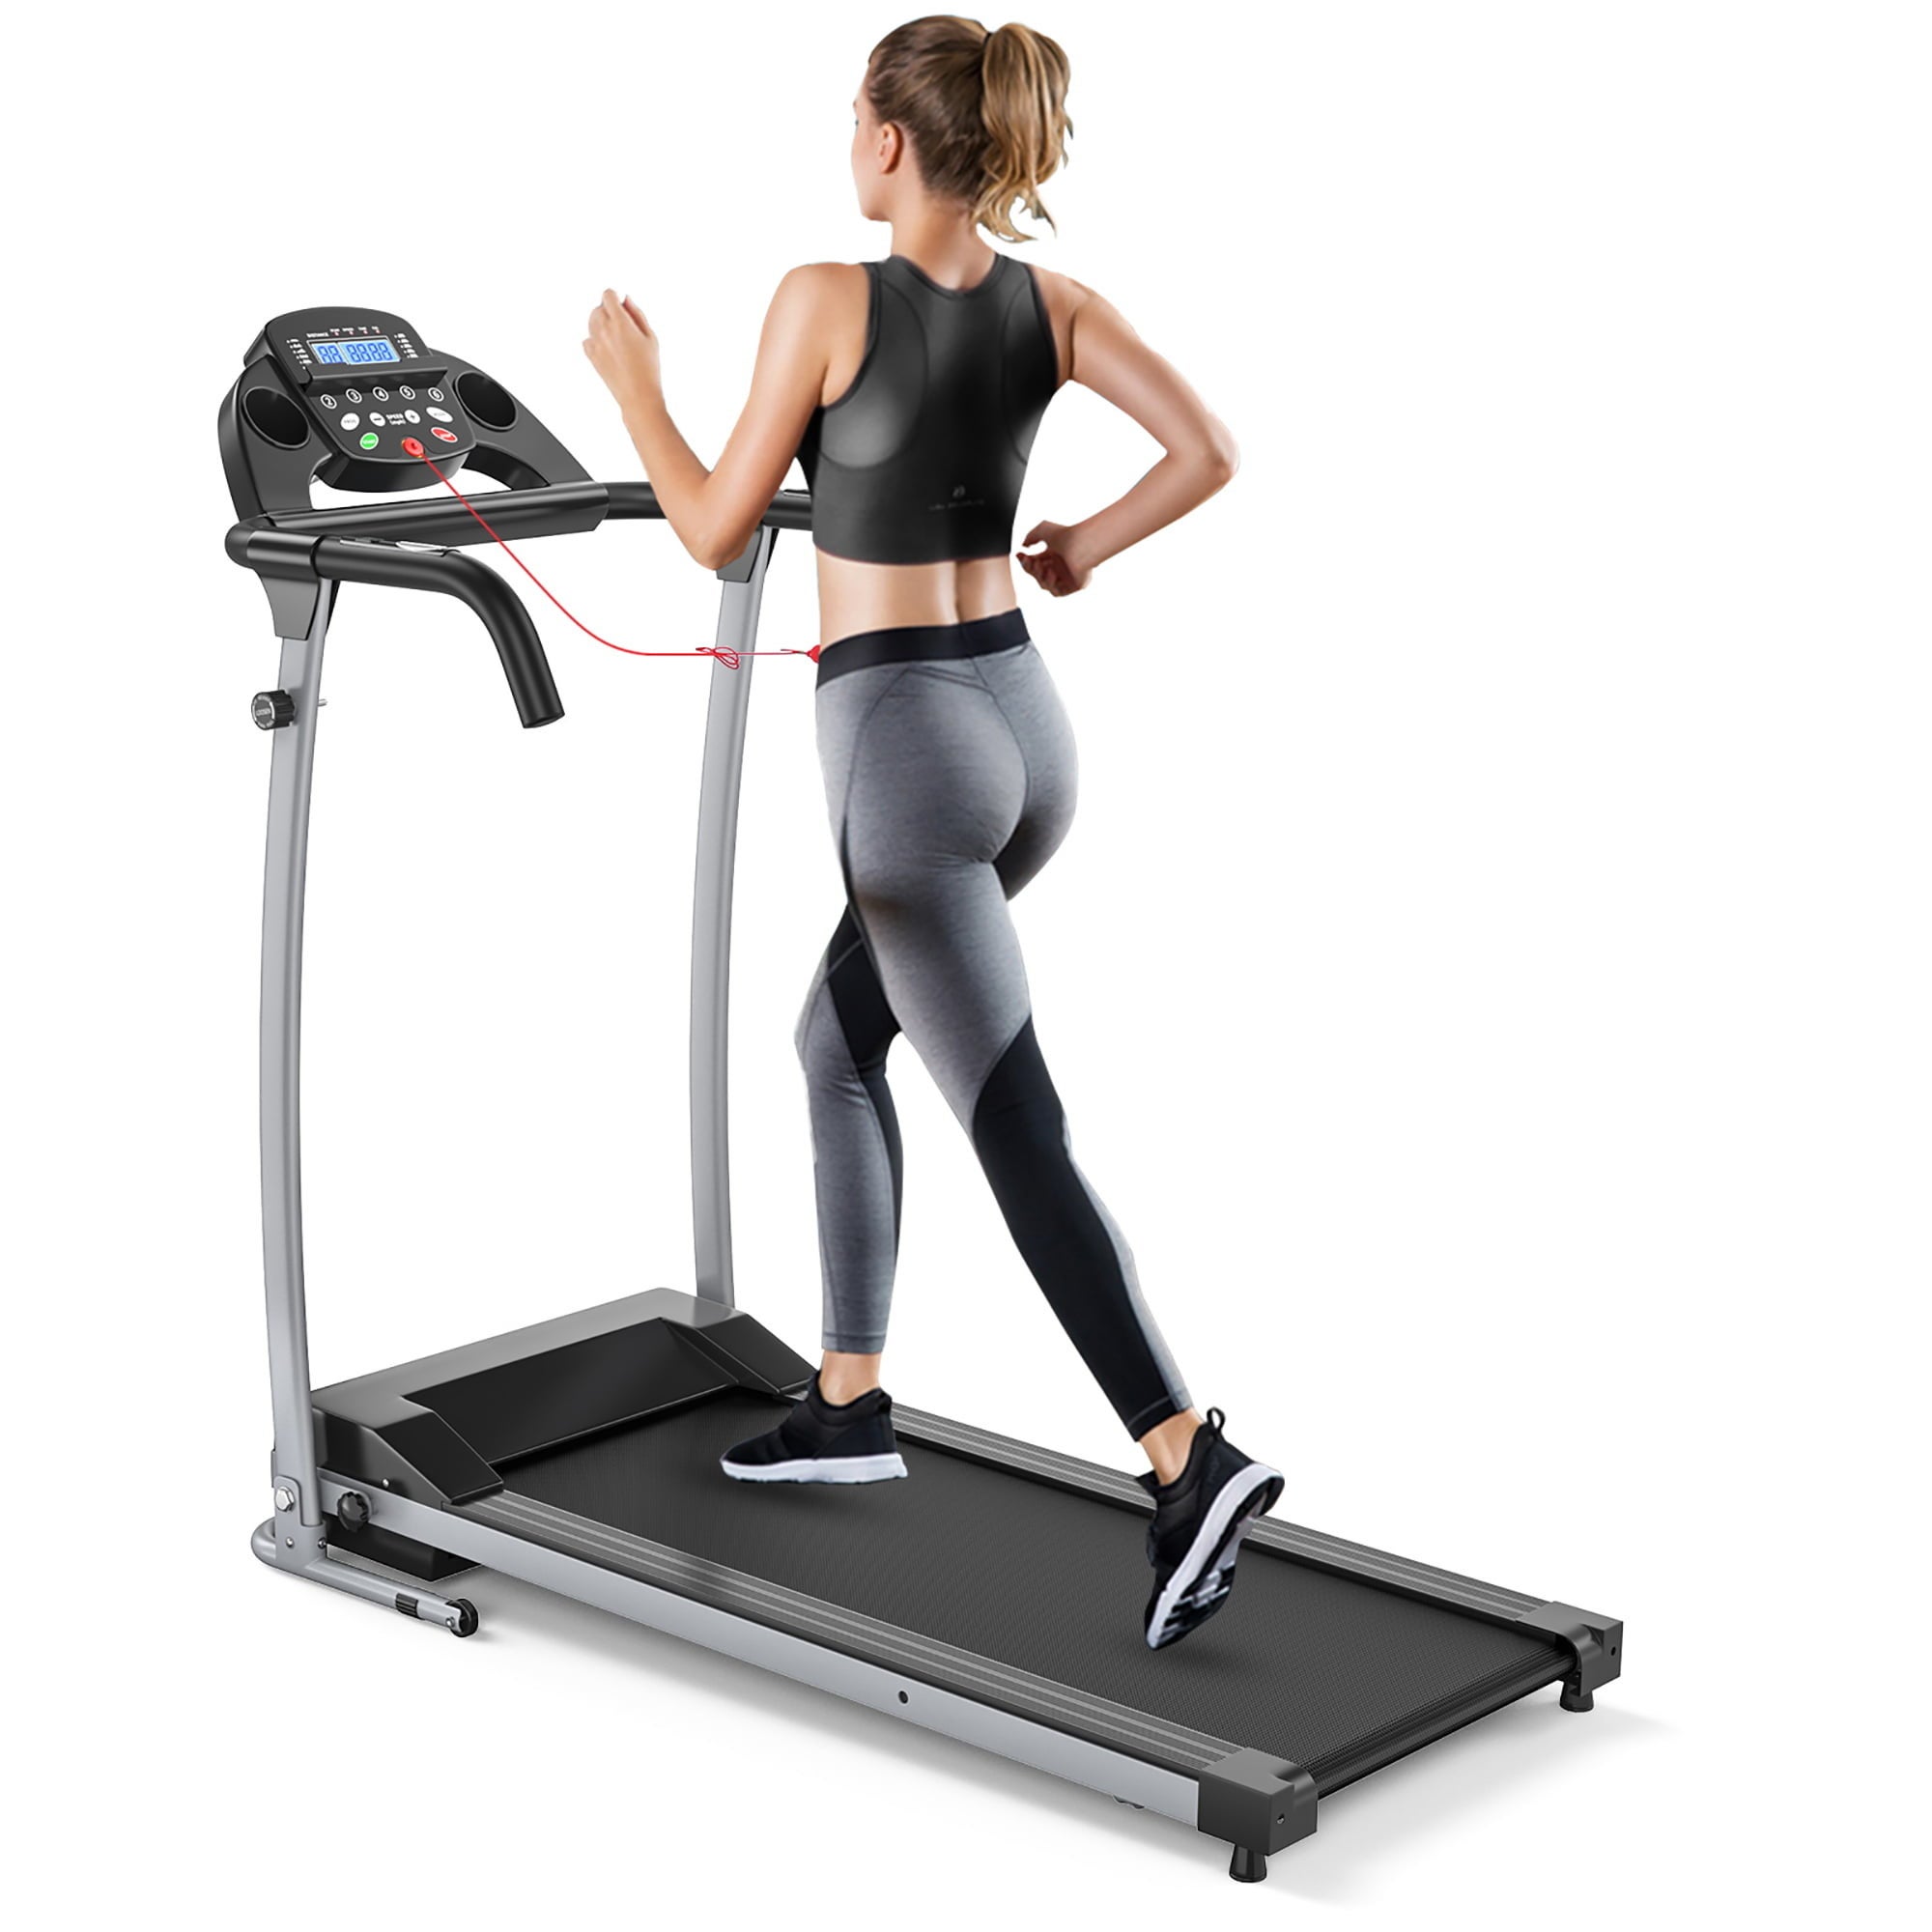 a model running on a treadmill